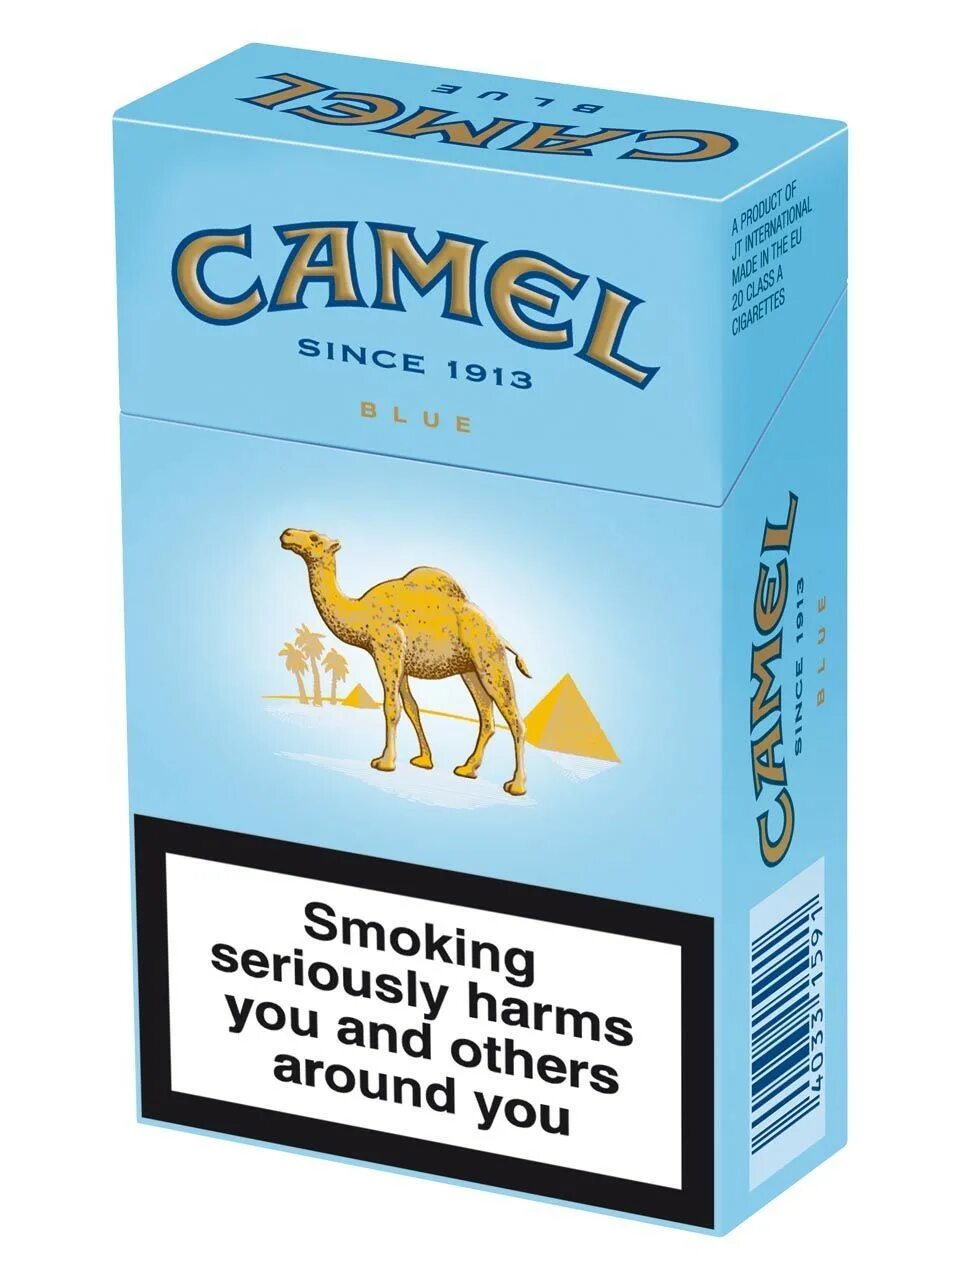 Сигареты Camel Original Blue. Camel Compact Silver. Сигареты Camel Compact Blue. Camel 1913 пачка сигарет. Кэмл компакт